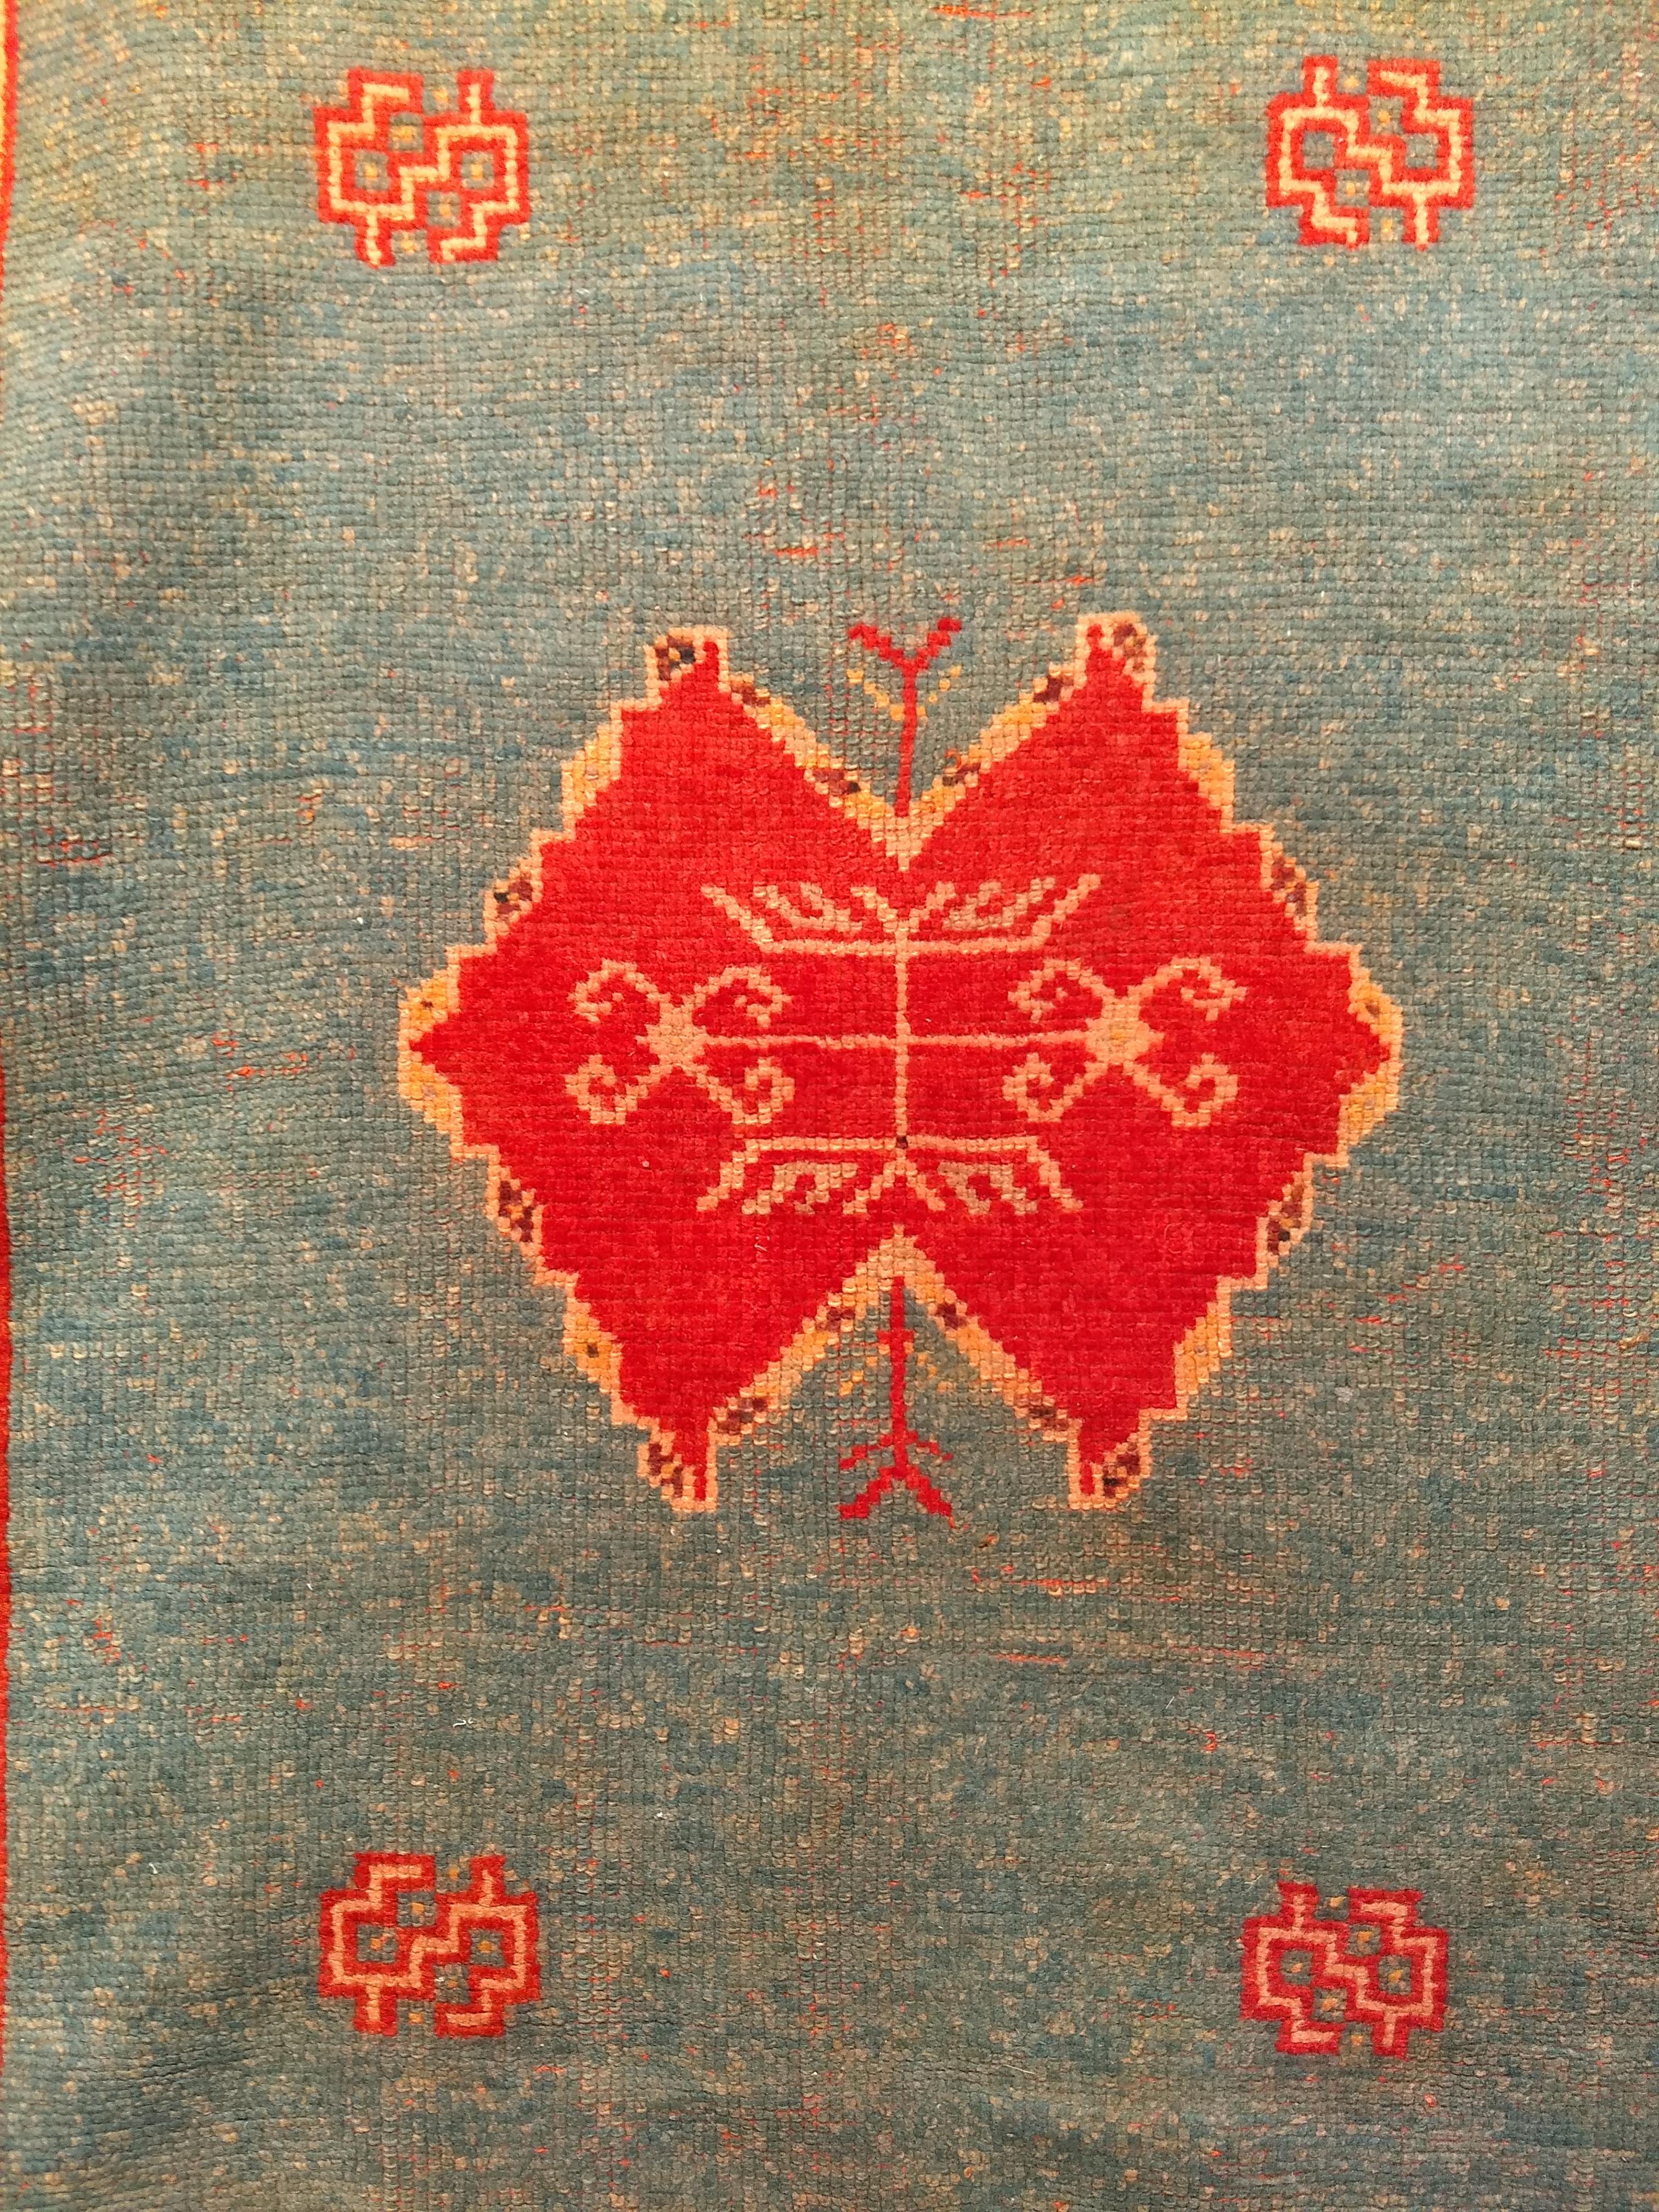 Tapis marocain vintage à motif géométrique ouvert dans un champ vert abrash (variation de couleur) avec un petit médaillon rouge et jaune et des écoinçons rouges.  Le tapis présente une magnifique bordure jaune safran avec des motifs rouges, verts